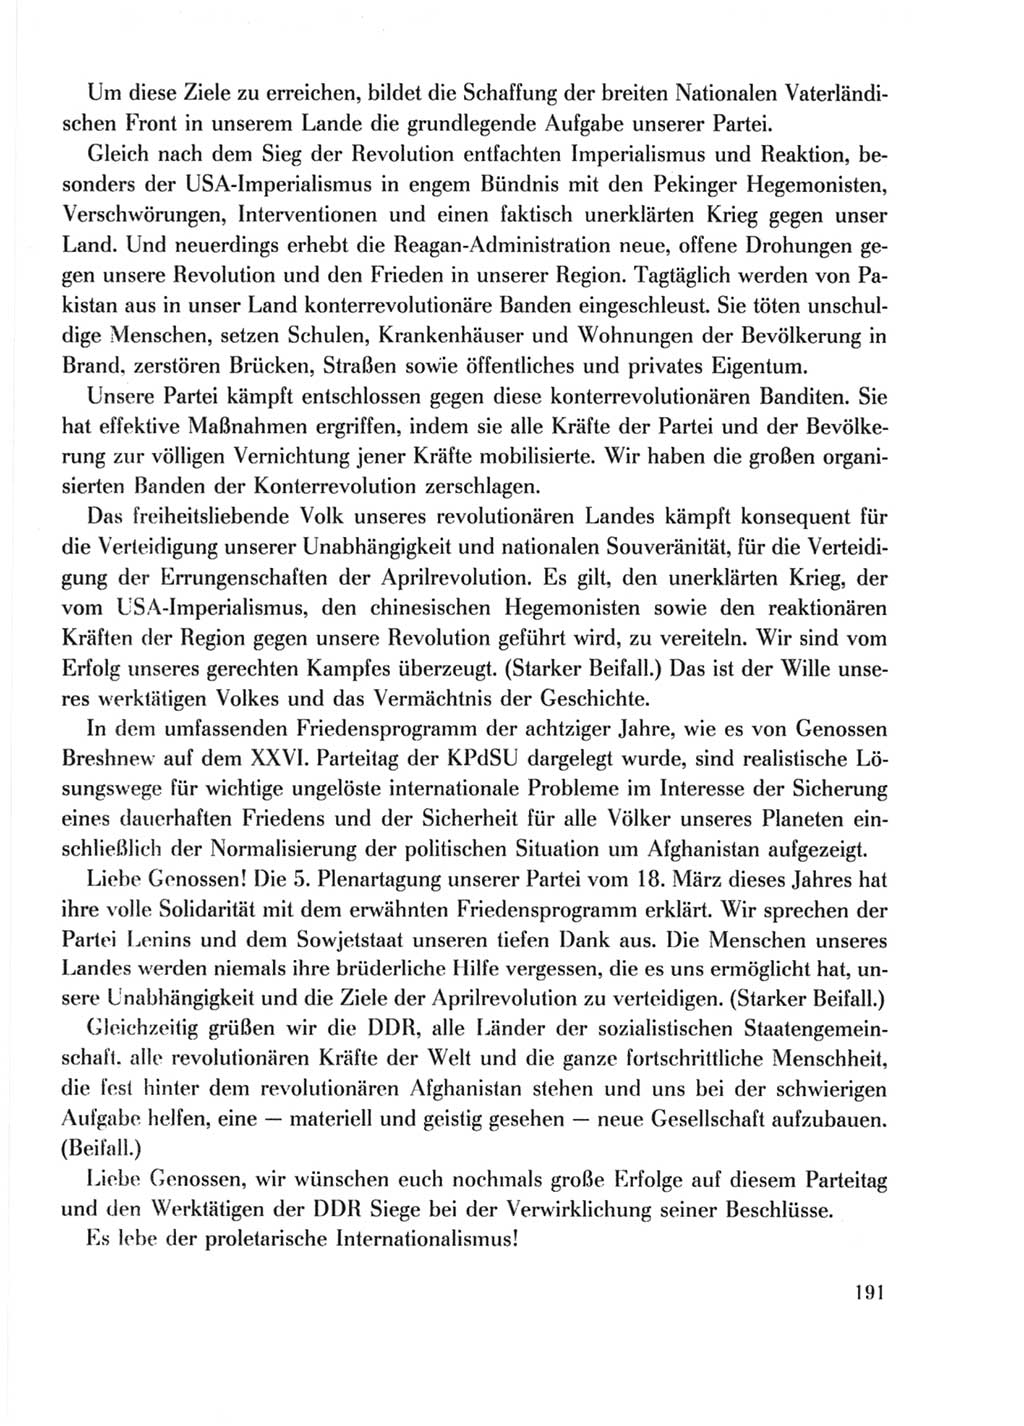 Protokoll der Verhandlungen des Ⅹ. Parteitages der Sozialistischen Einheitspartei Deutschlands (SED) [Deutsche Demokratische Republik (DDR)] 1981, Band 2, Seite 191 (Prot. Verh. Ⅹ. PT SED DDR 1981, Bd. 2, S. 191)